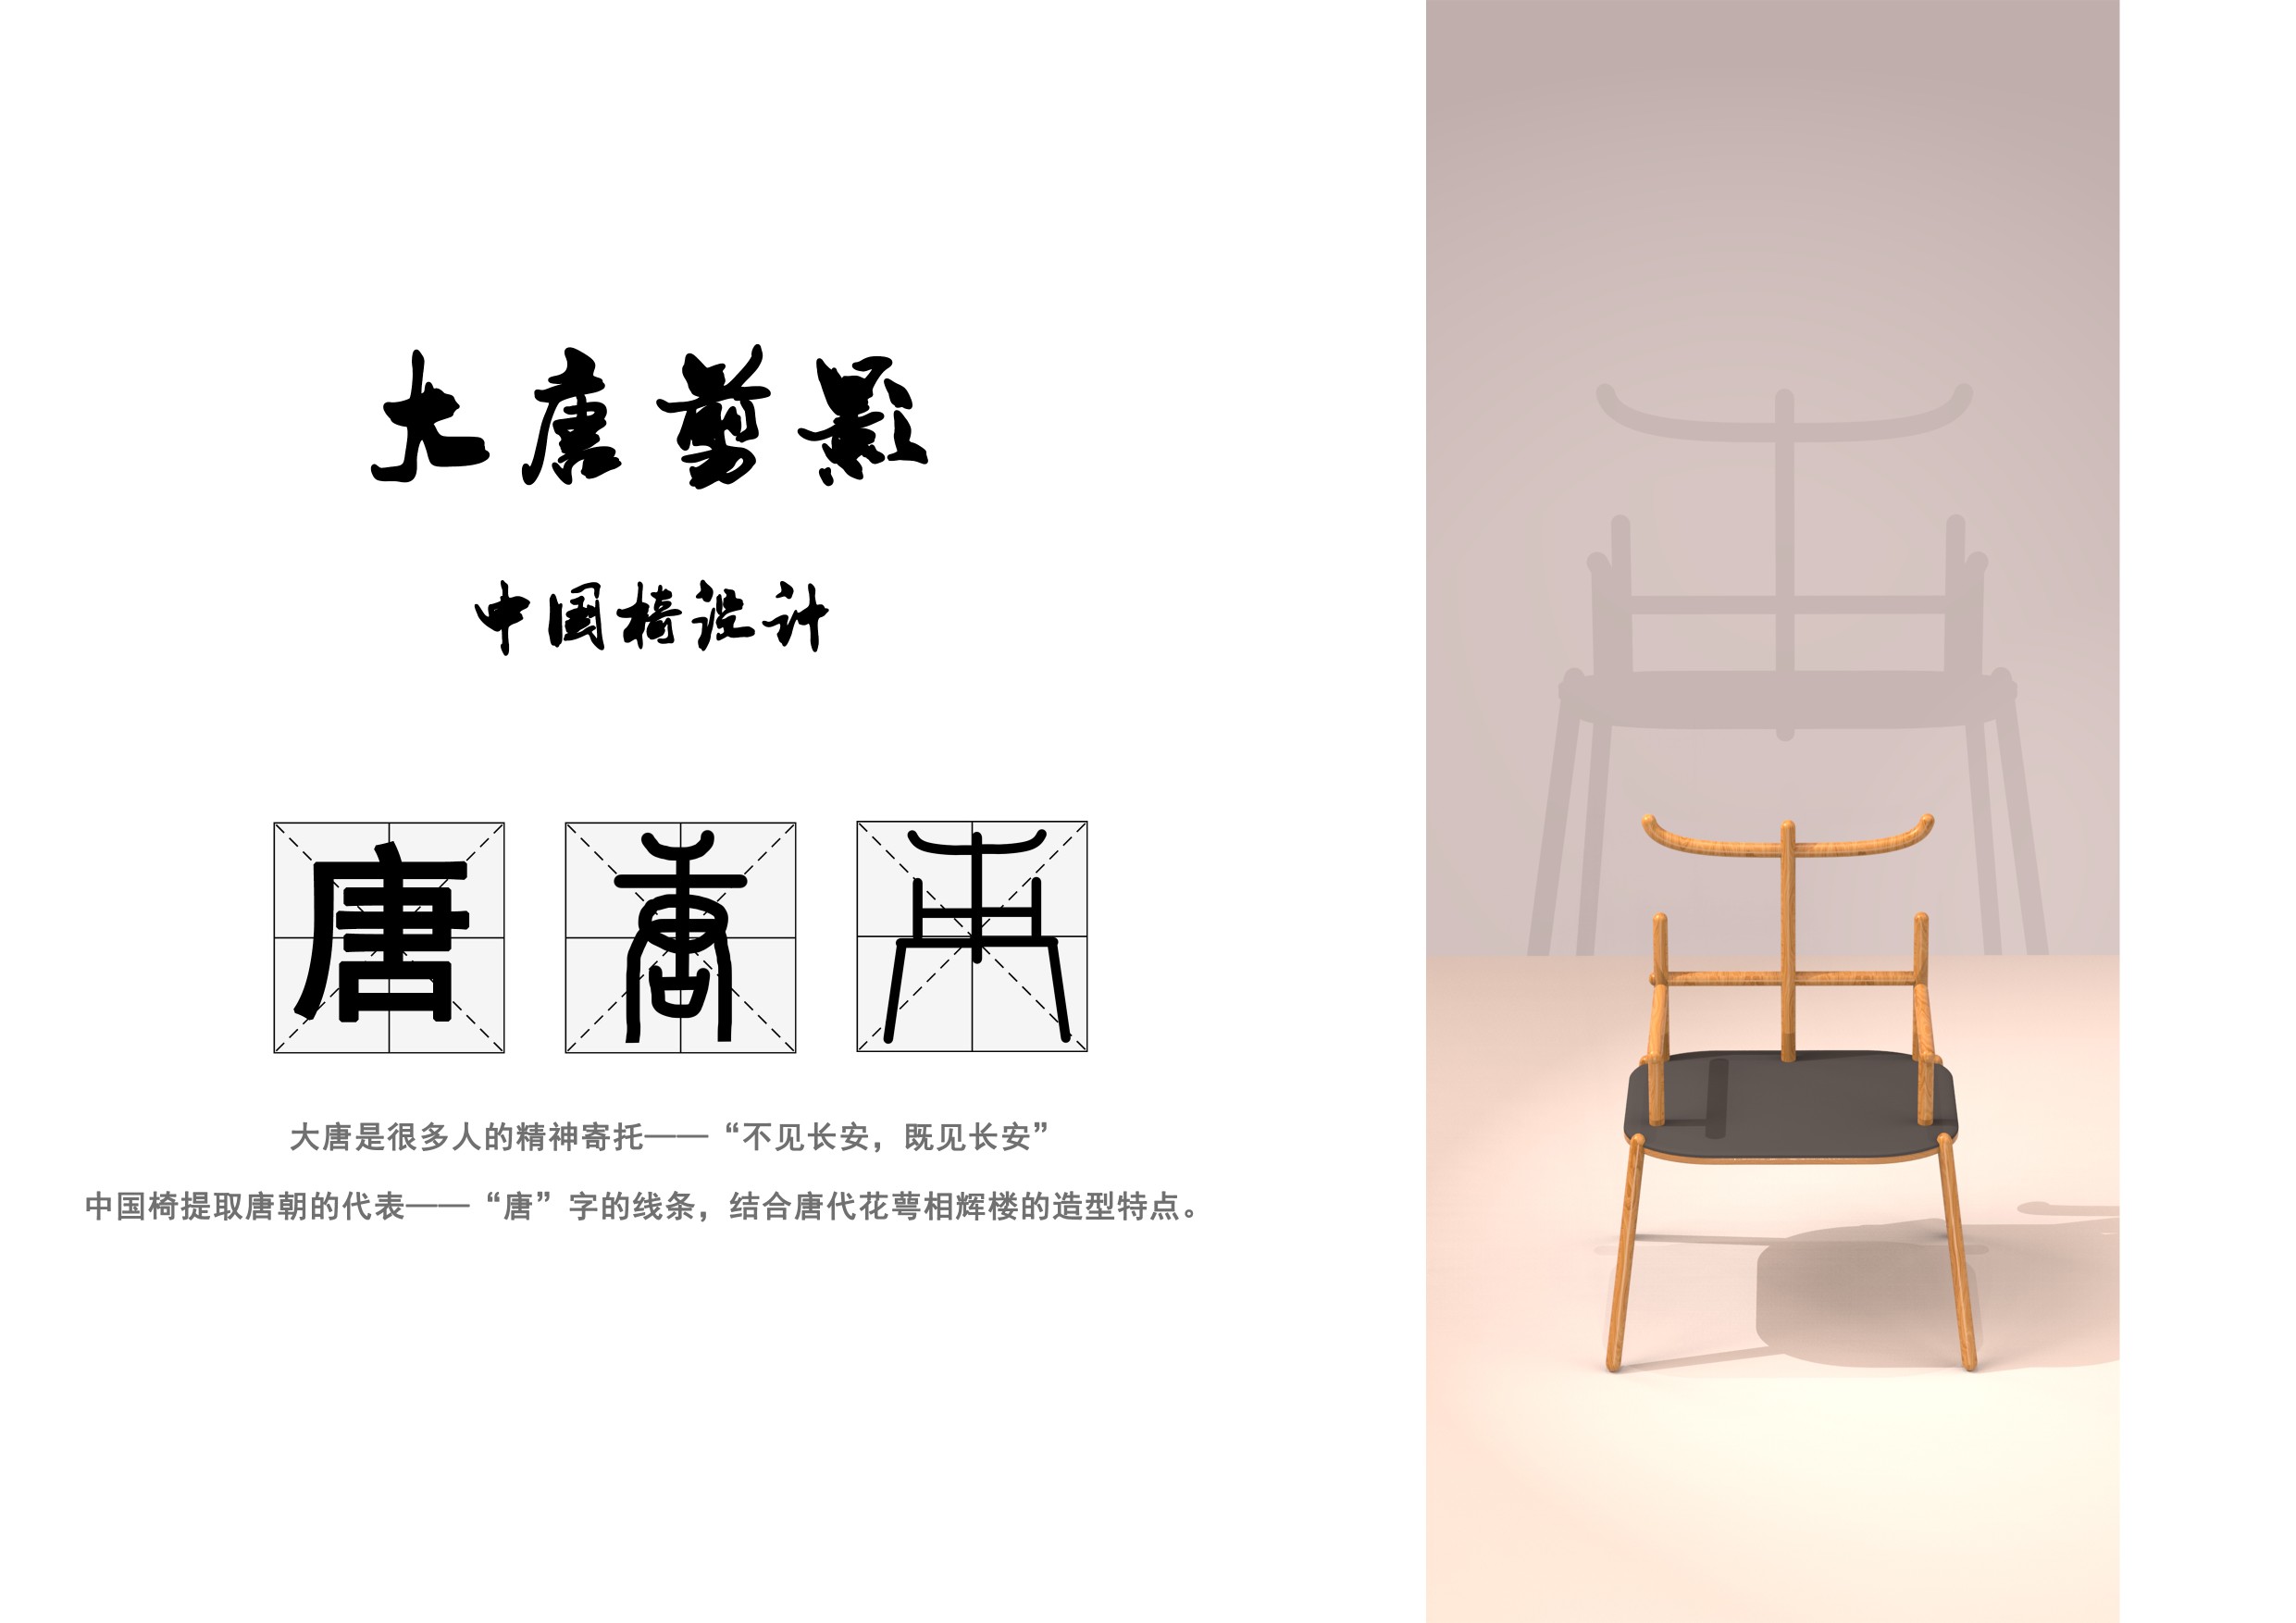 基于唐朝符号抽象化的中国椅文创设计